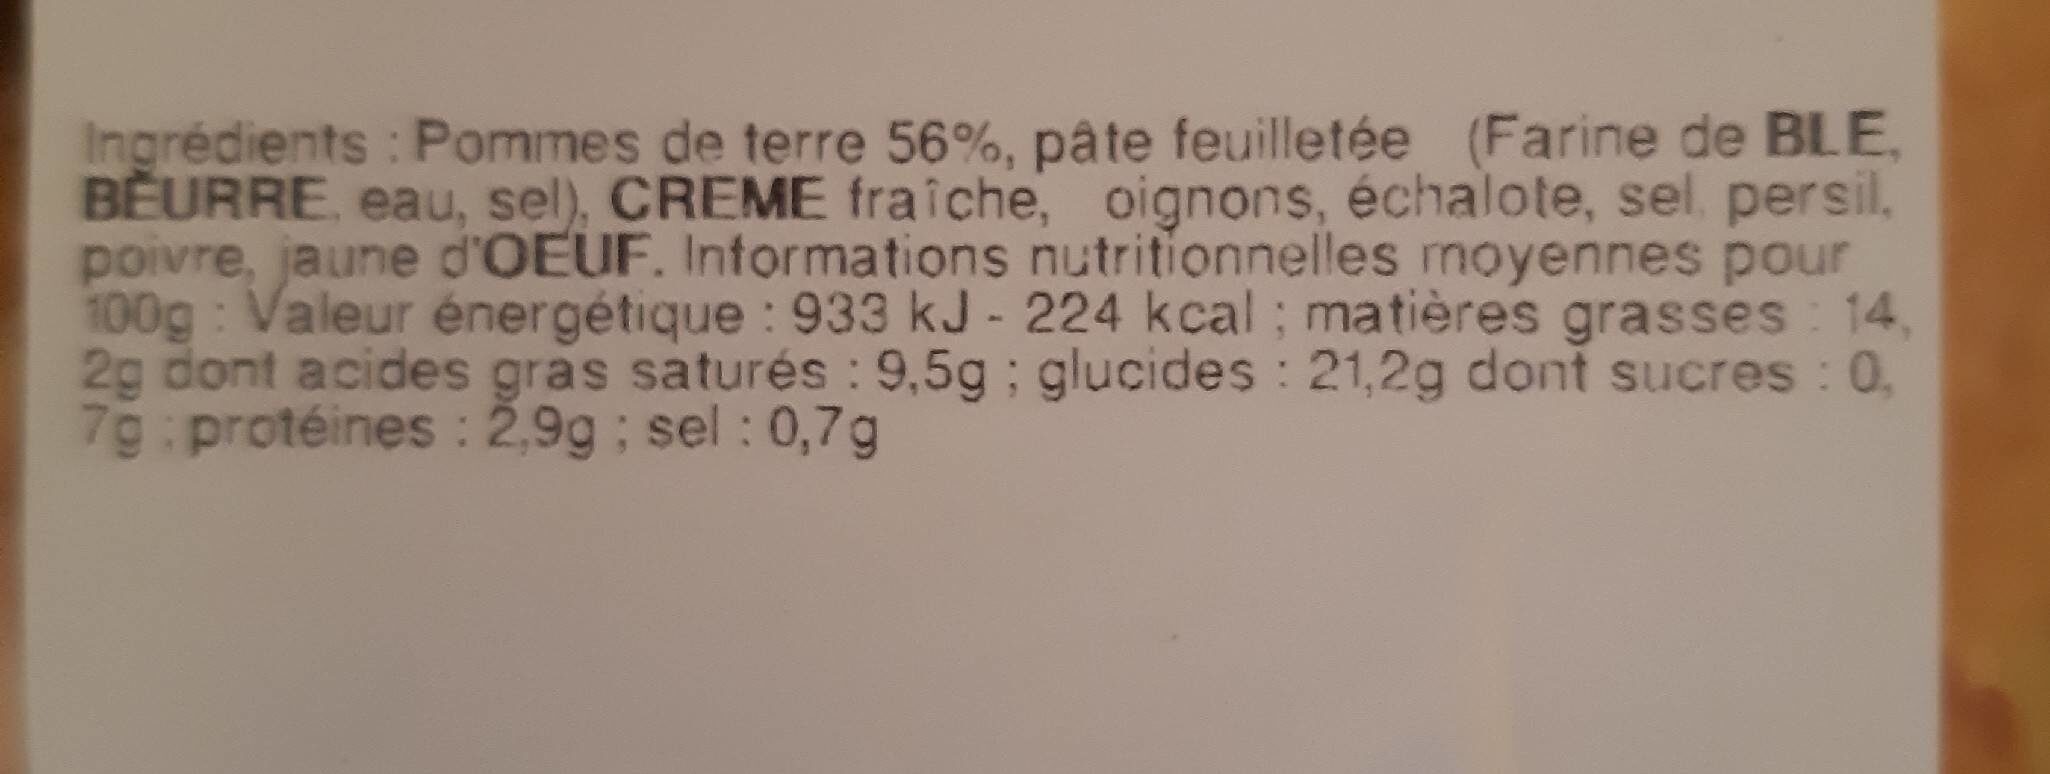 Pâté aux pommes  de terre - Nutrition facts - fr